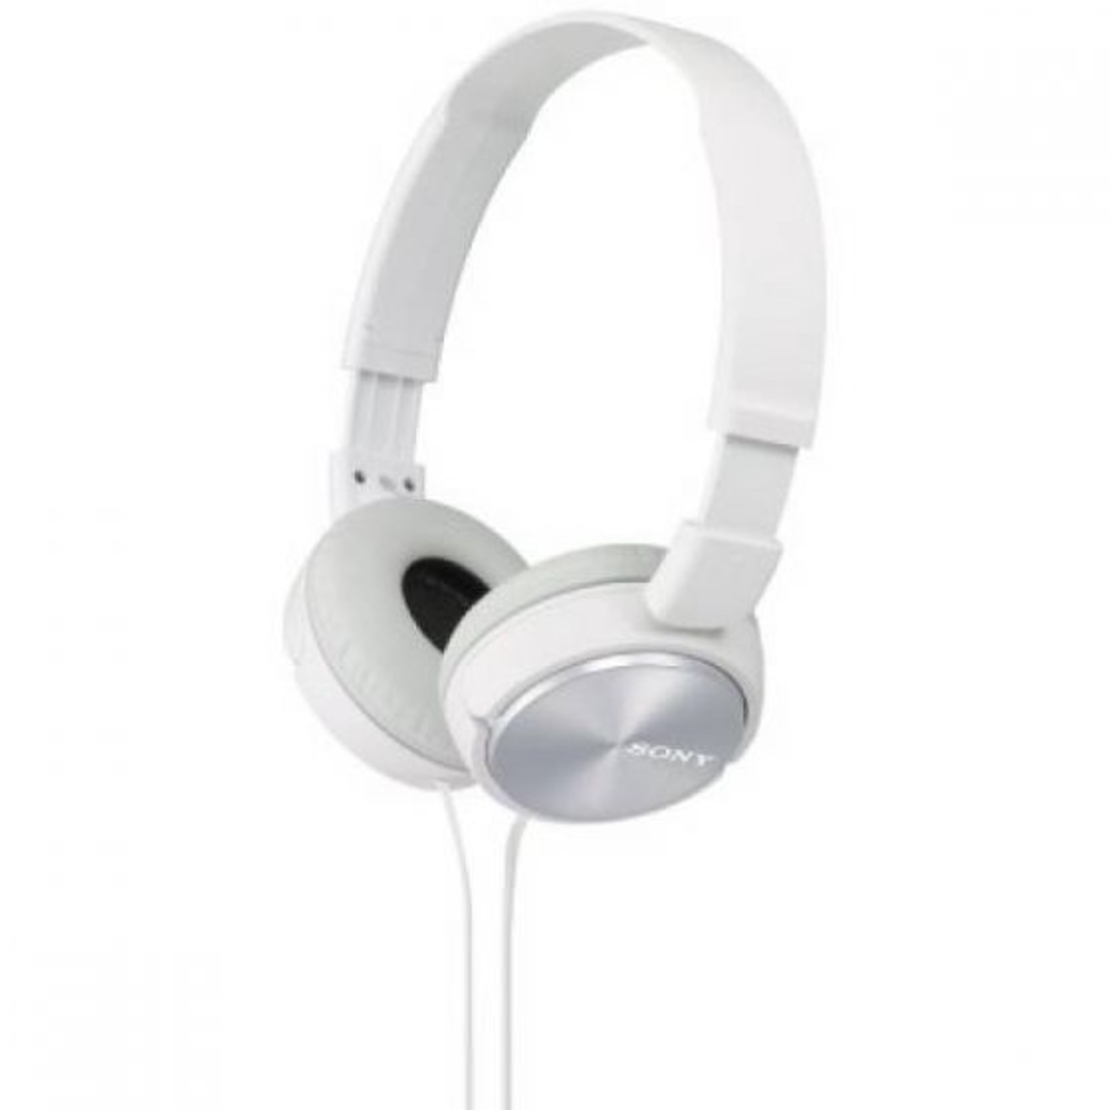 אוזניות קשת Sony MDR-X310 בצבע לבן